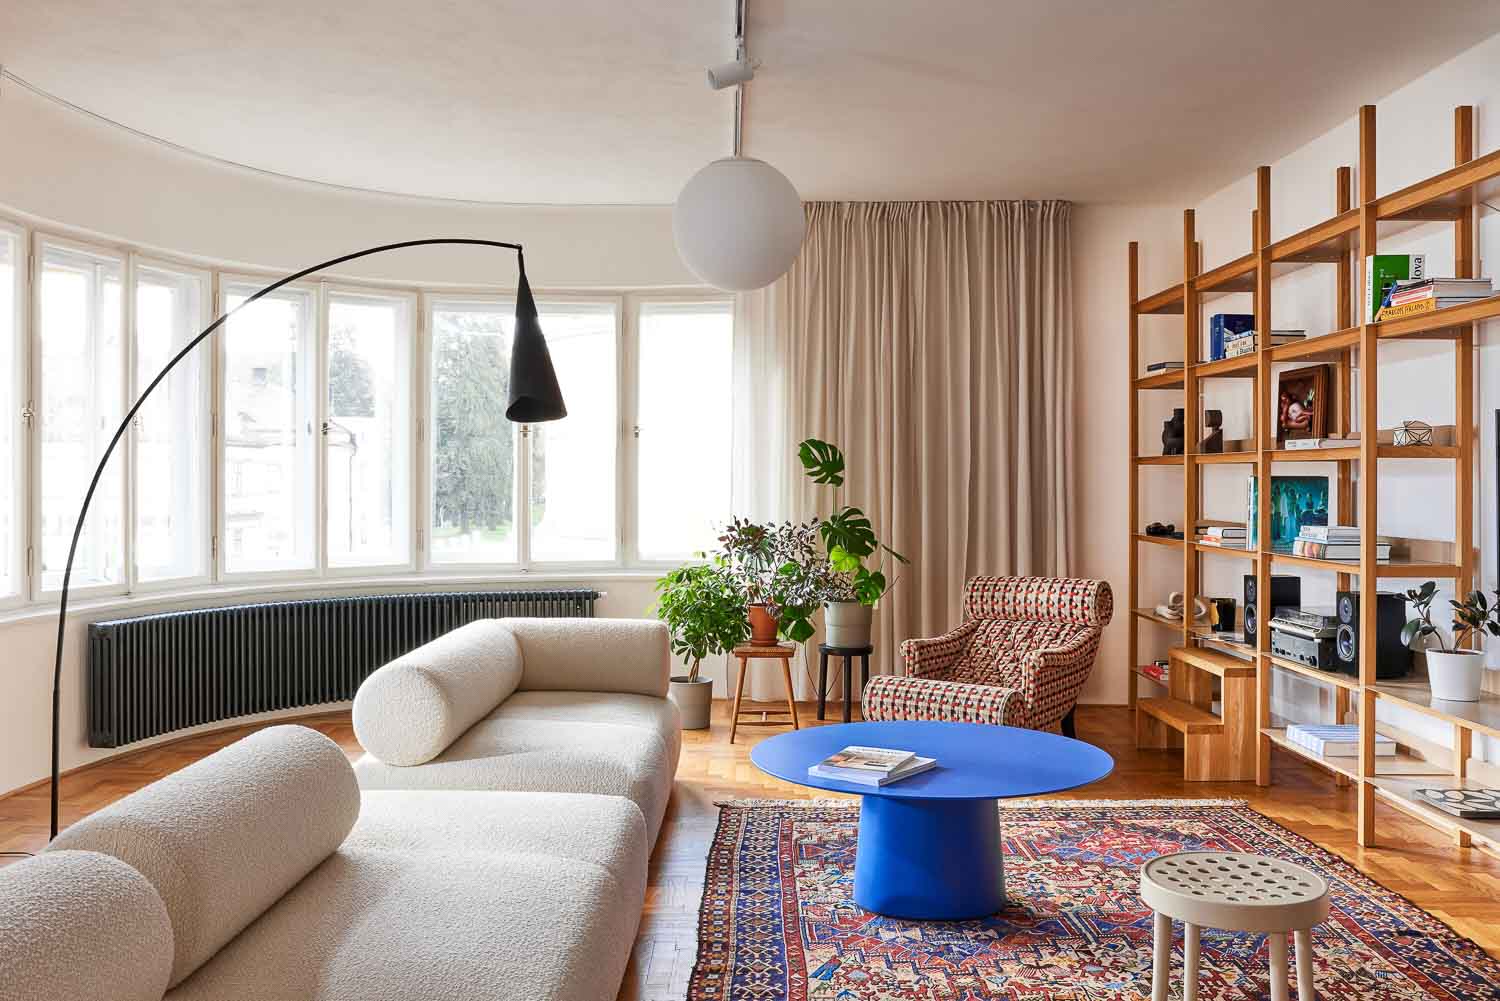 Typisch für die Architektur der Zeit: das bogenförmige Fensterband im Wohnzimmer. Foto: Honza Zima